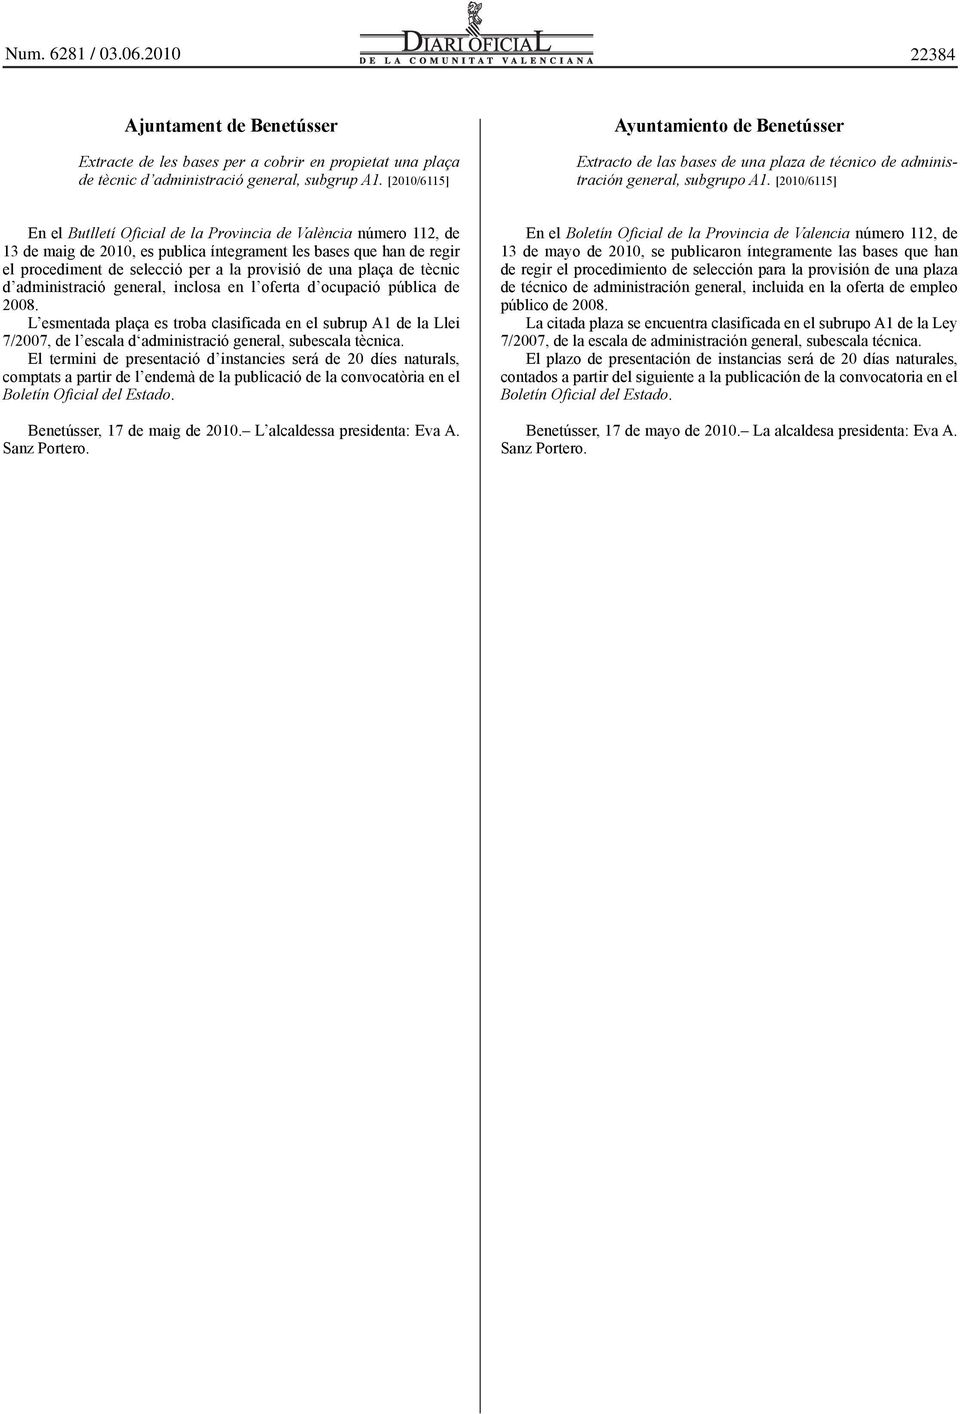 [2010/6115] En el Butlletí Oficial de la Provincia de València número 112, de 13 de maig de 2010, es publica íntegrament les bases que han de regir el procediment de selecció per a la provisió de una